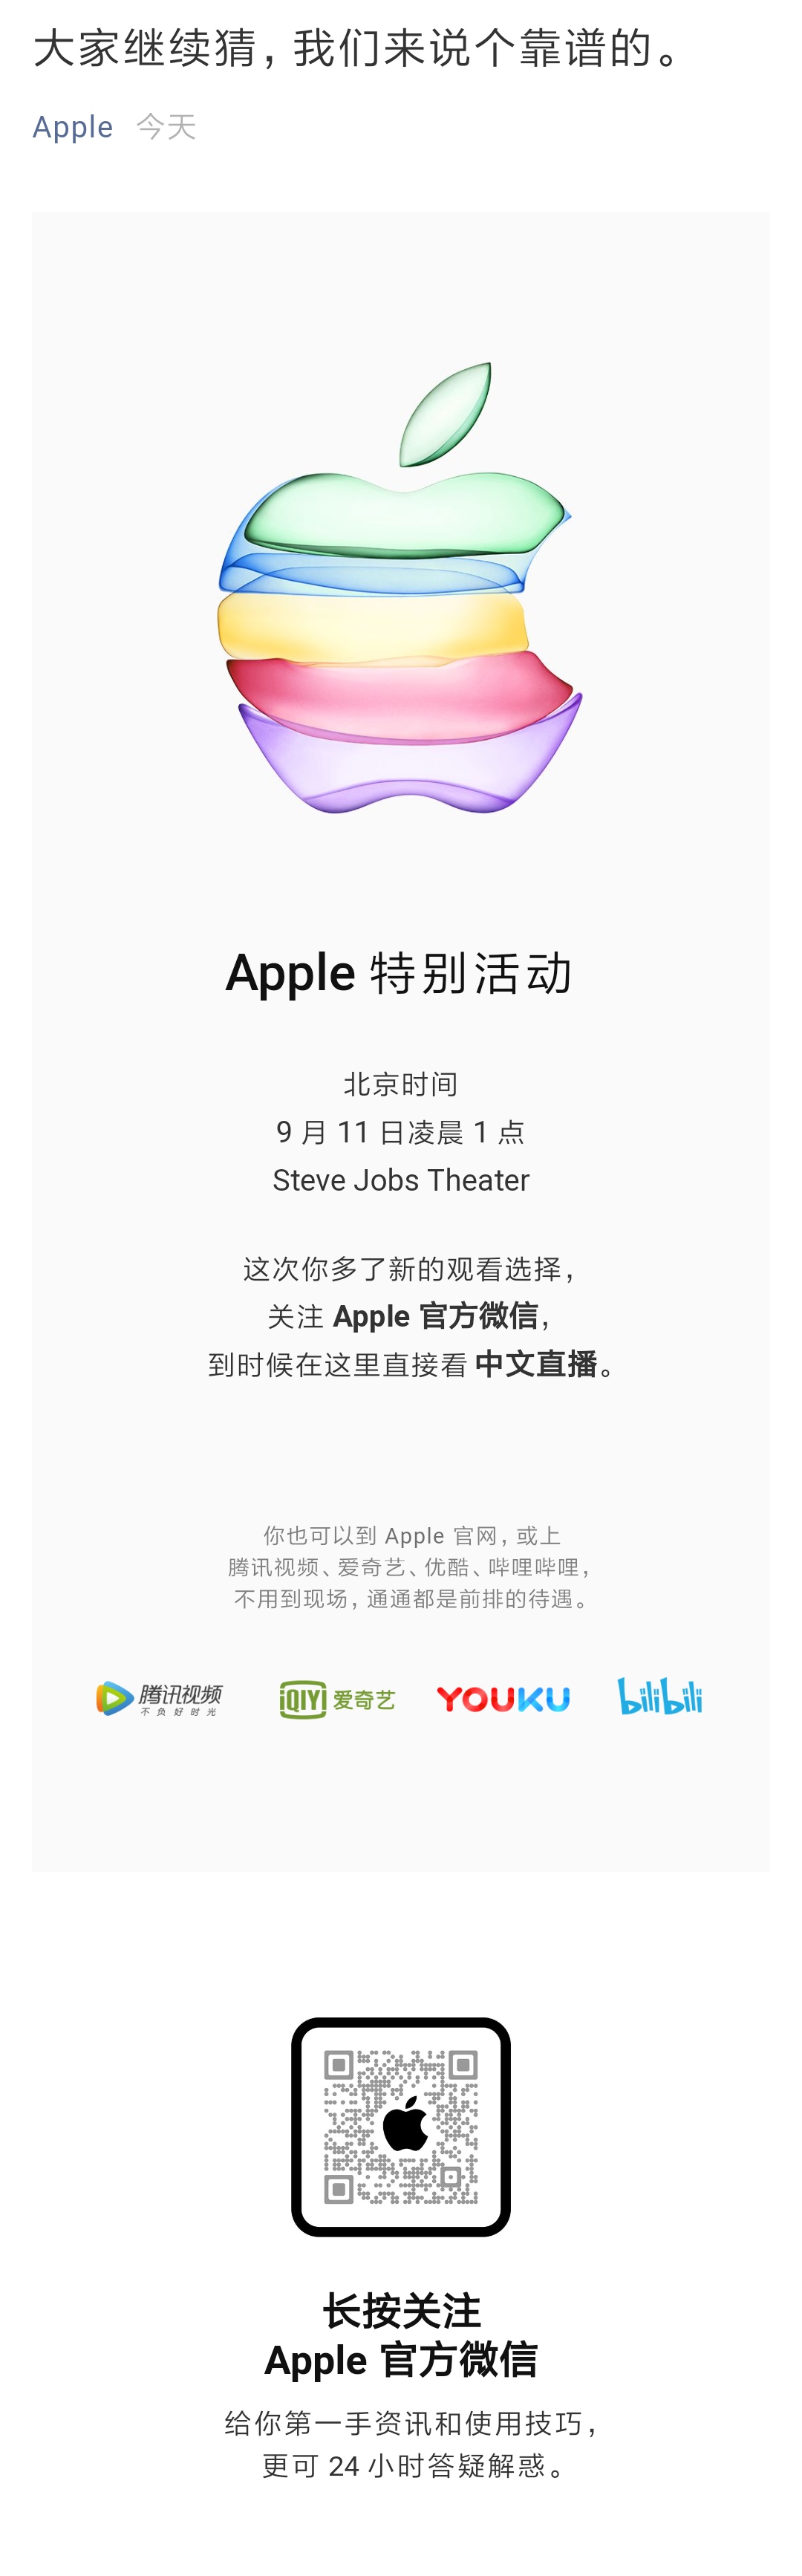 他来了他来了他带着苹果走来了 苹果9月11日发布新Iphone 乔布 腾讯 优酷 中文 届时 北京时间 哔哩 1点 9月11 苹果 新闻资讯  第2张